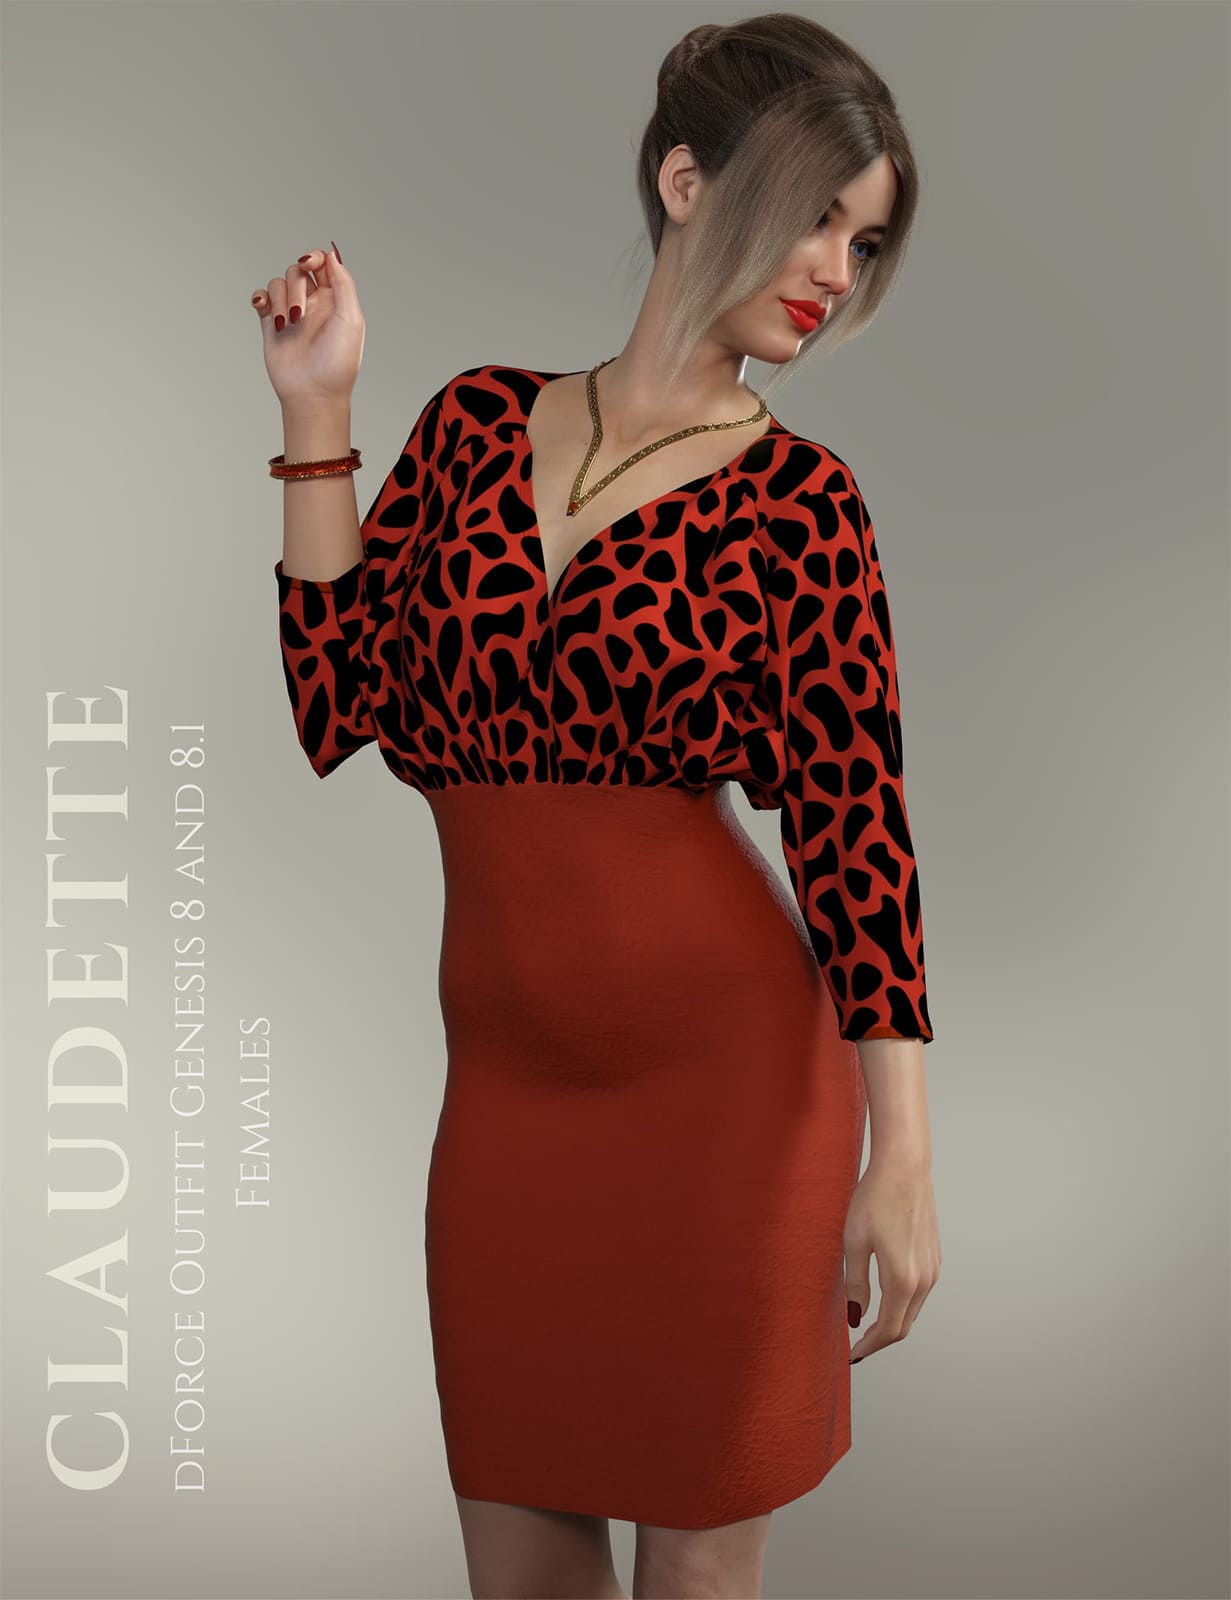 dForce Claudette Outfit for Genesis 8 & 8.1 Females_DAZ3D下载站